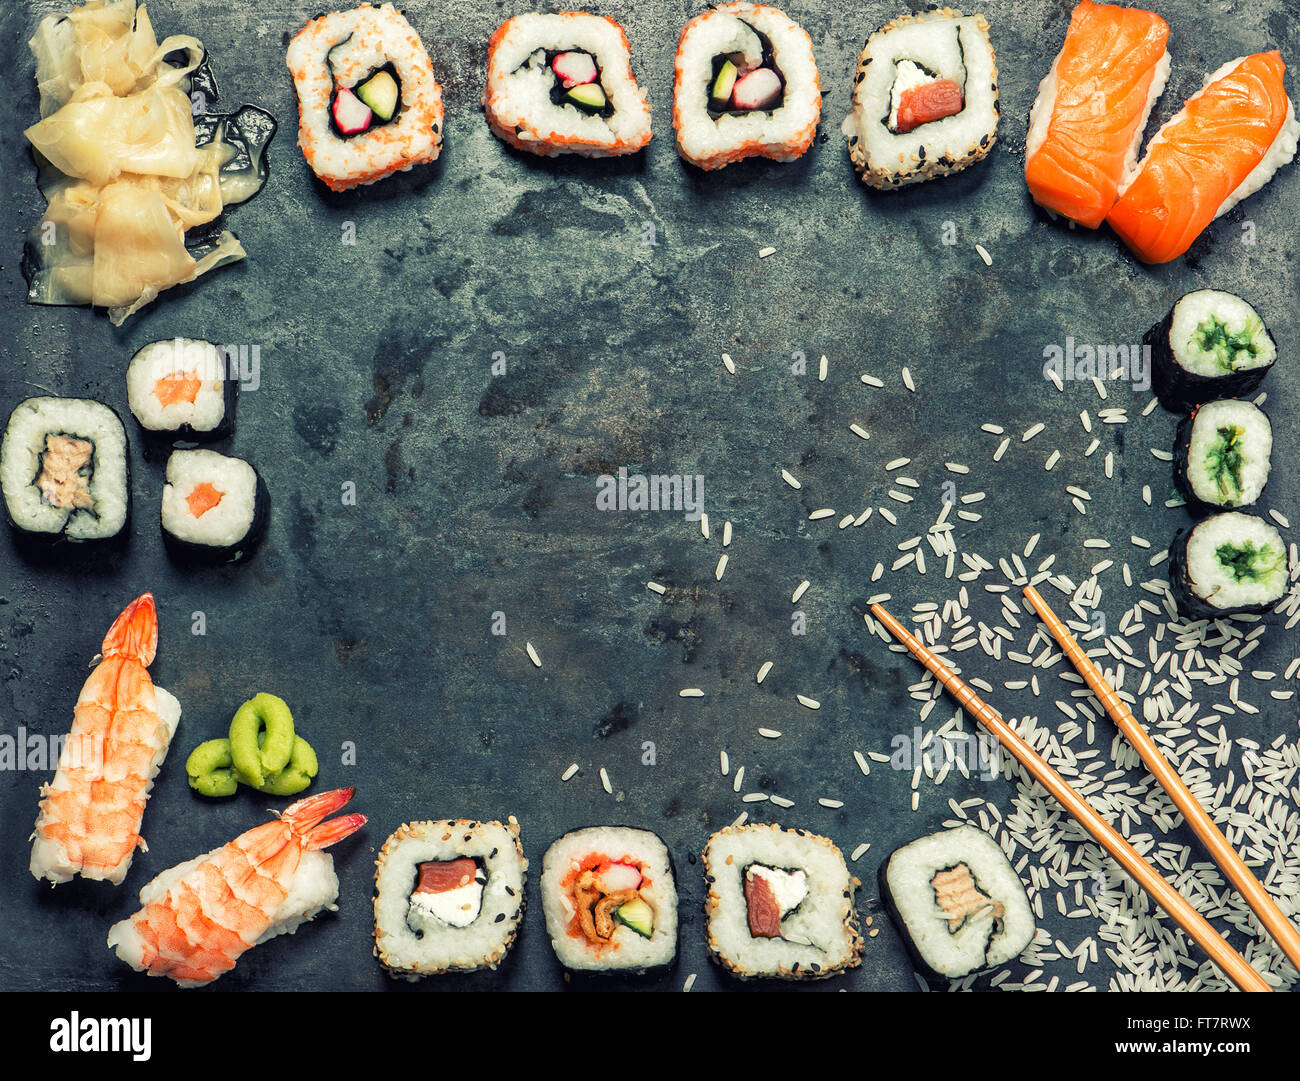 Sushi-Rollen, Maki, Nigiri, Lachs, Wasabi, Garnelen, Thunfisch, Tofu, Reis, Avocado, eingelegten Ingwer. Hintergrund der asiatischen japanisches Essen. VI Stockfoto